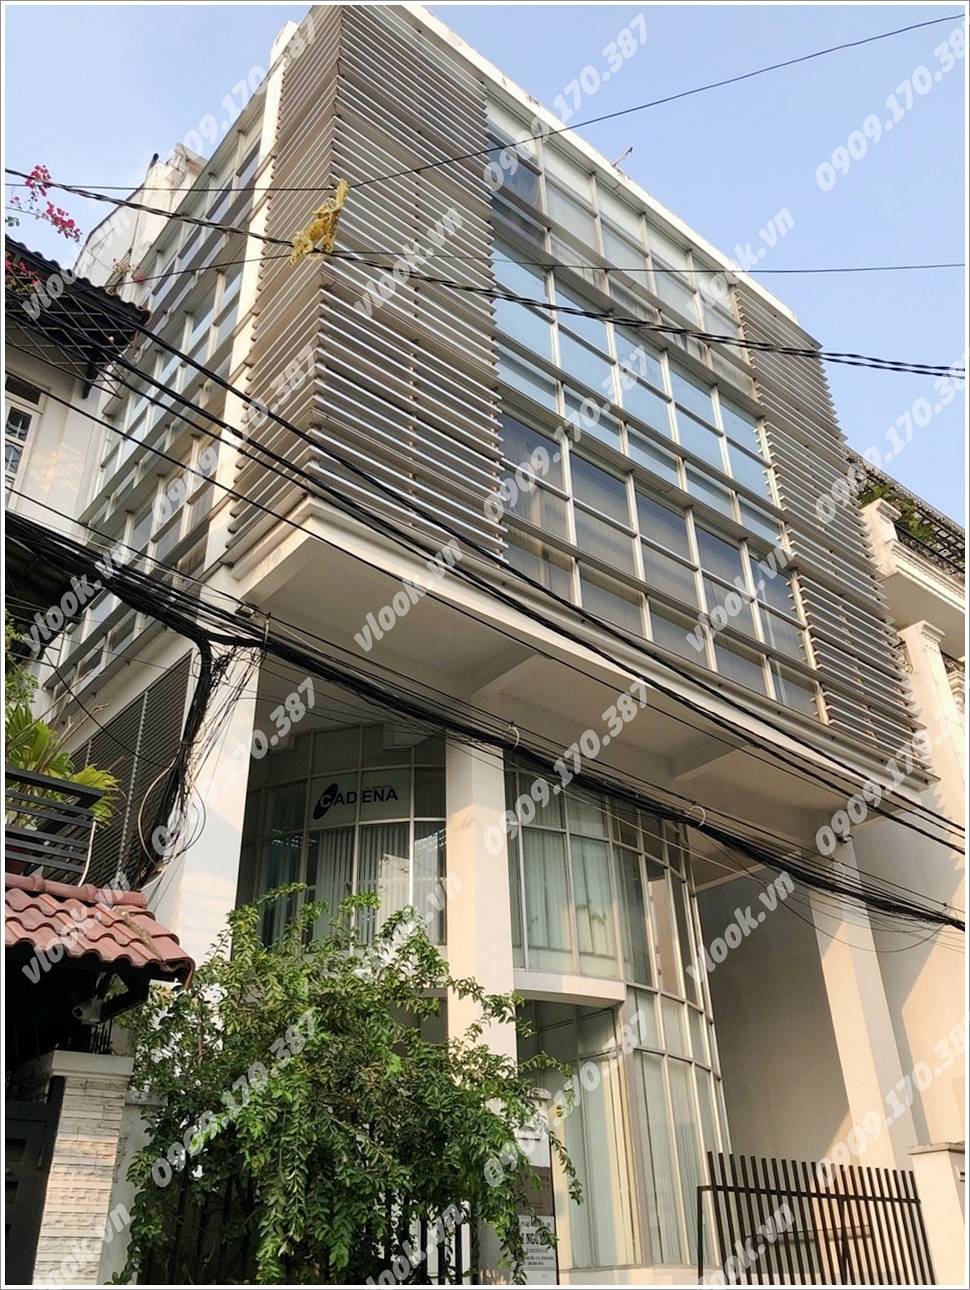 Cao ốc cho thuê văn phòng Fonterra Building, Nguyễn Văn Trỗi, Quận Phú Nhuận, TPHCM - vlook.vn